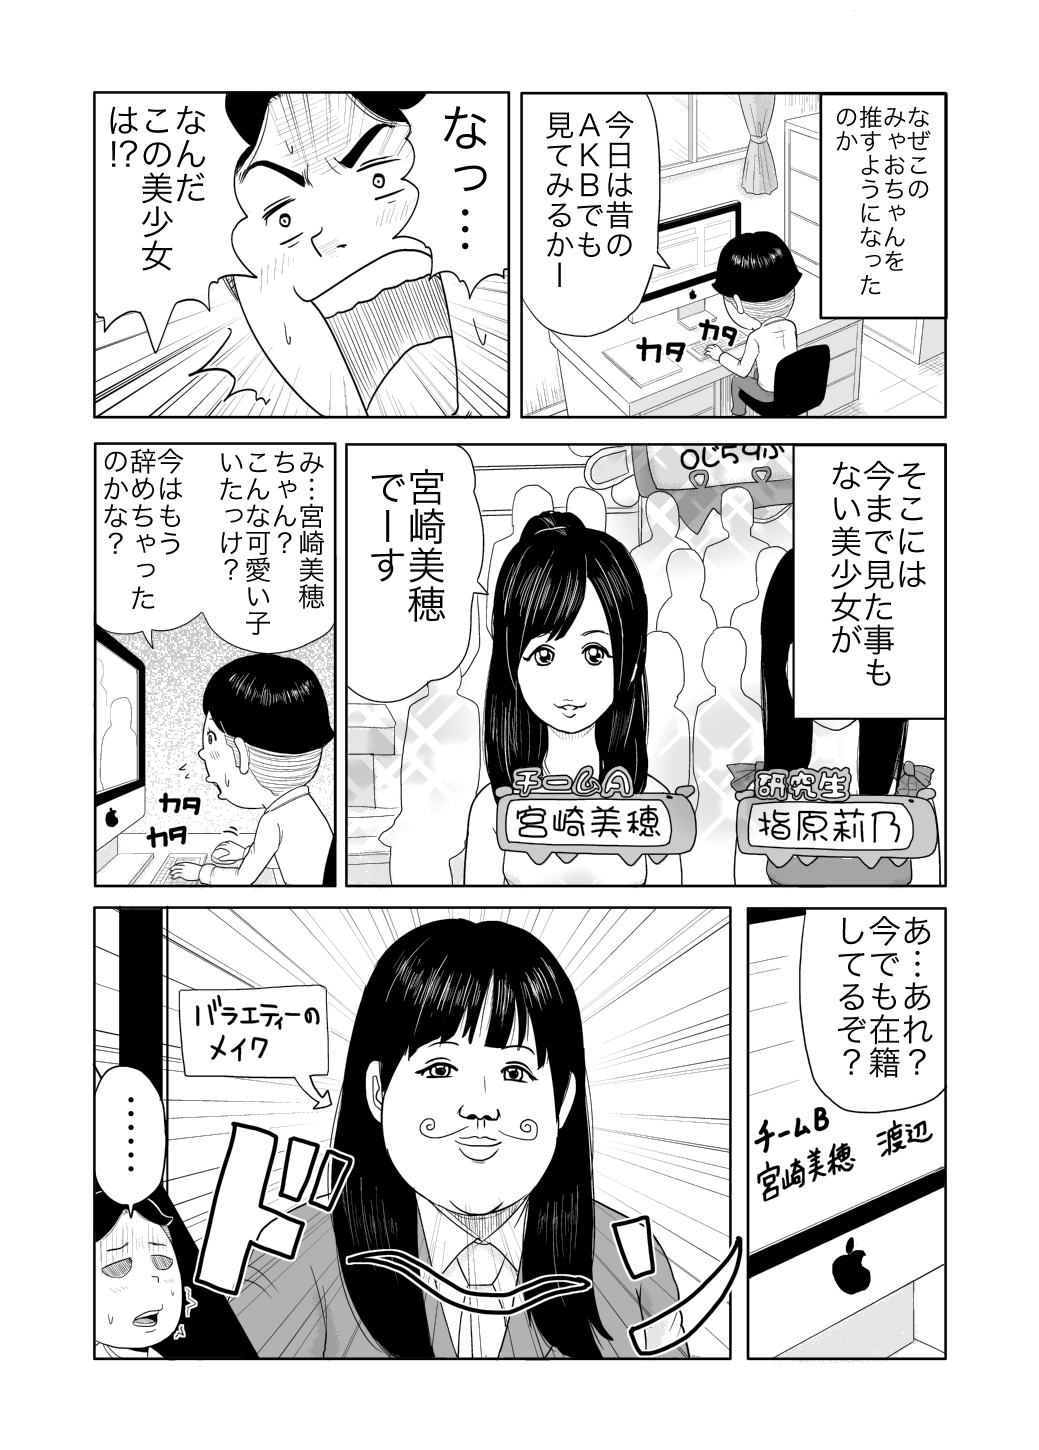 宮崎美穂 Akb48 の握手会に行った時の漫画 新井キヒロのブログ